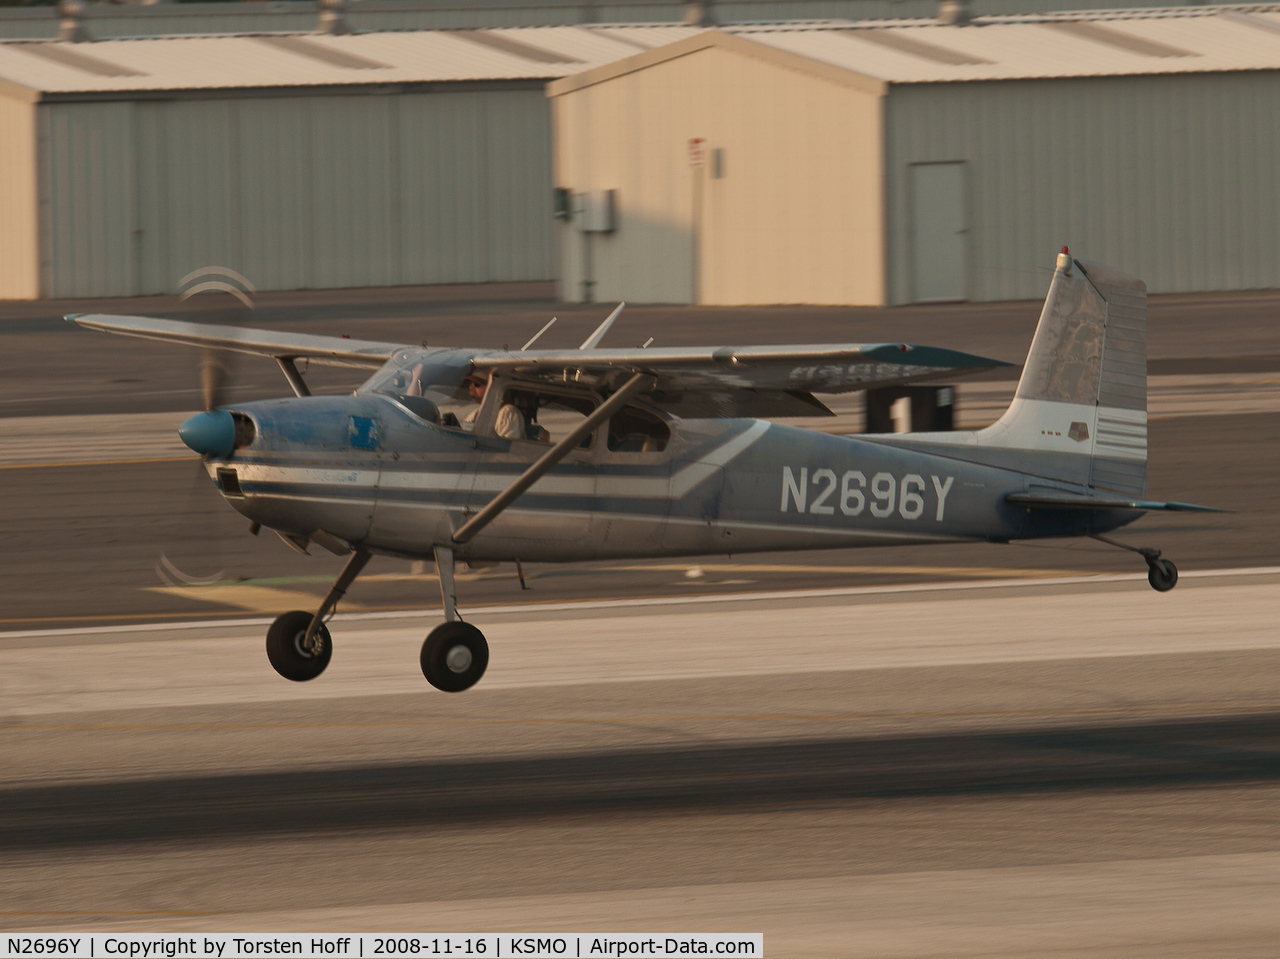 N2696Y, 1962 Cessna 180F C/N 18051196, N2696Y departing from RWY 21